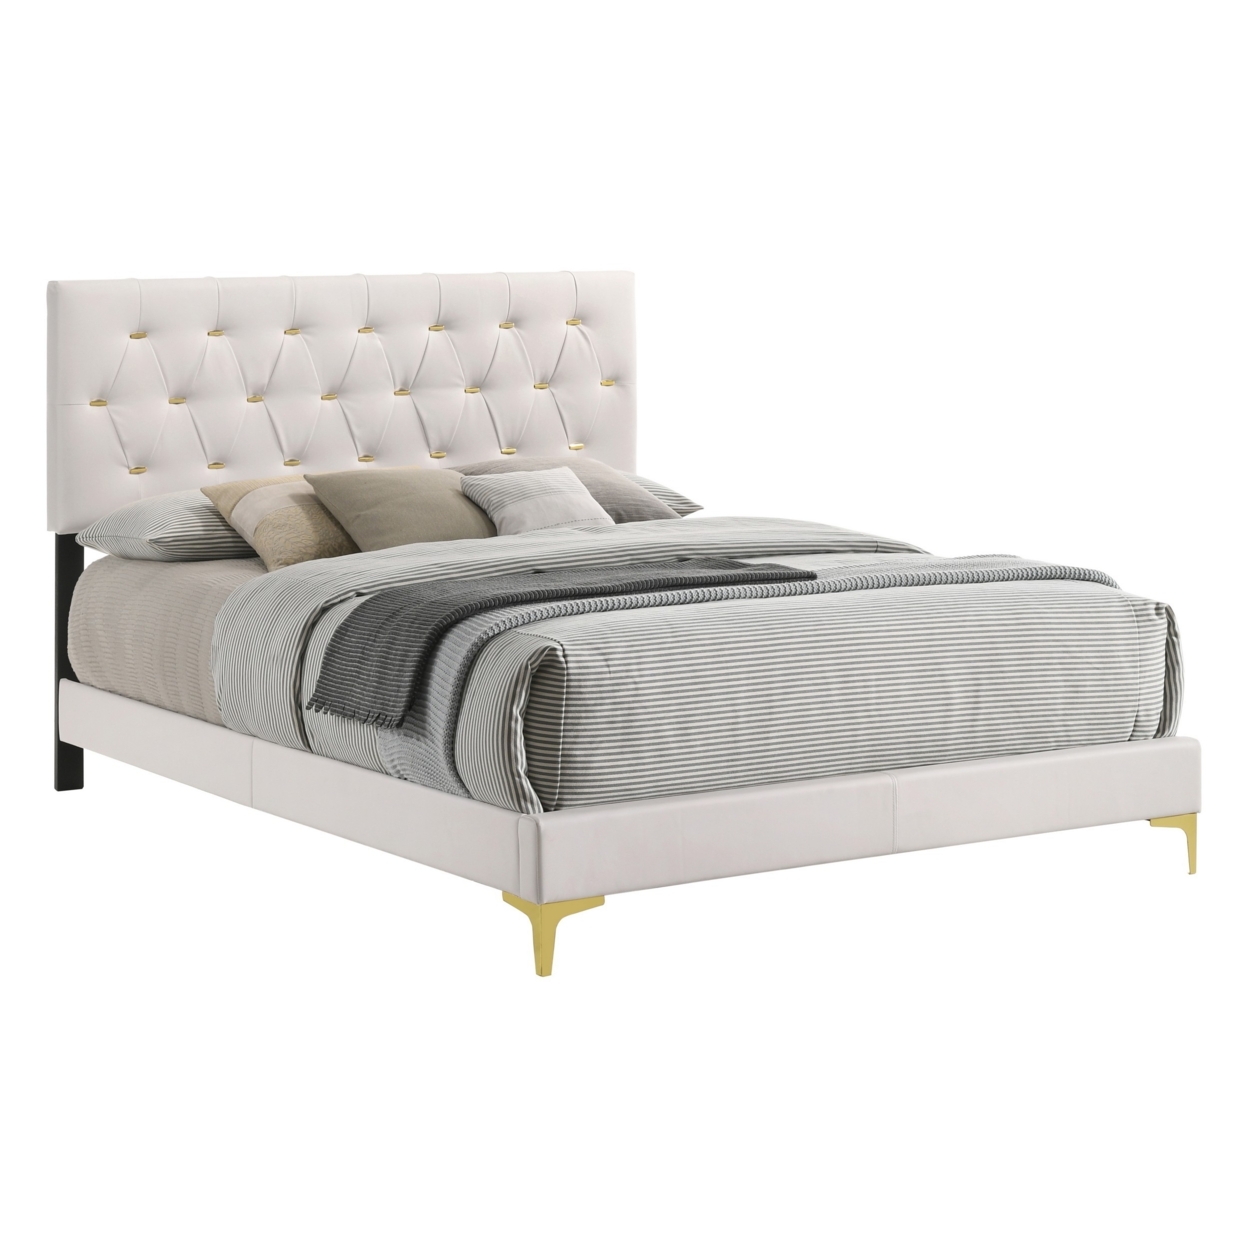 Lif Platform Queen Size Bed, Panel Tufted Headboard, Gold Legs White Velvet- Saltoro Sherpi